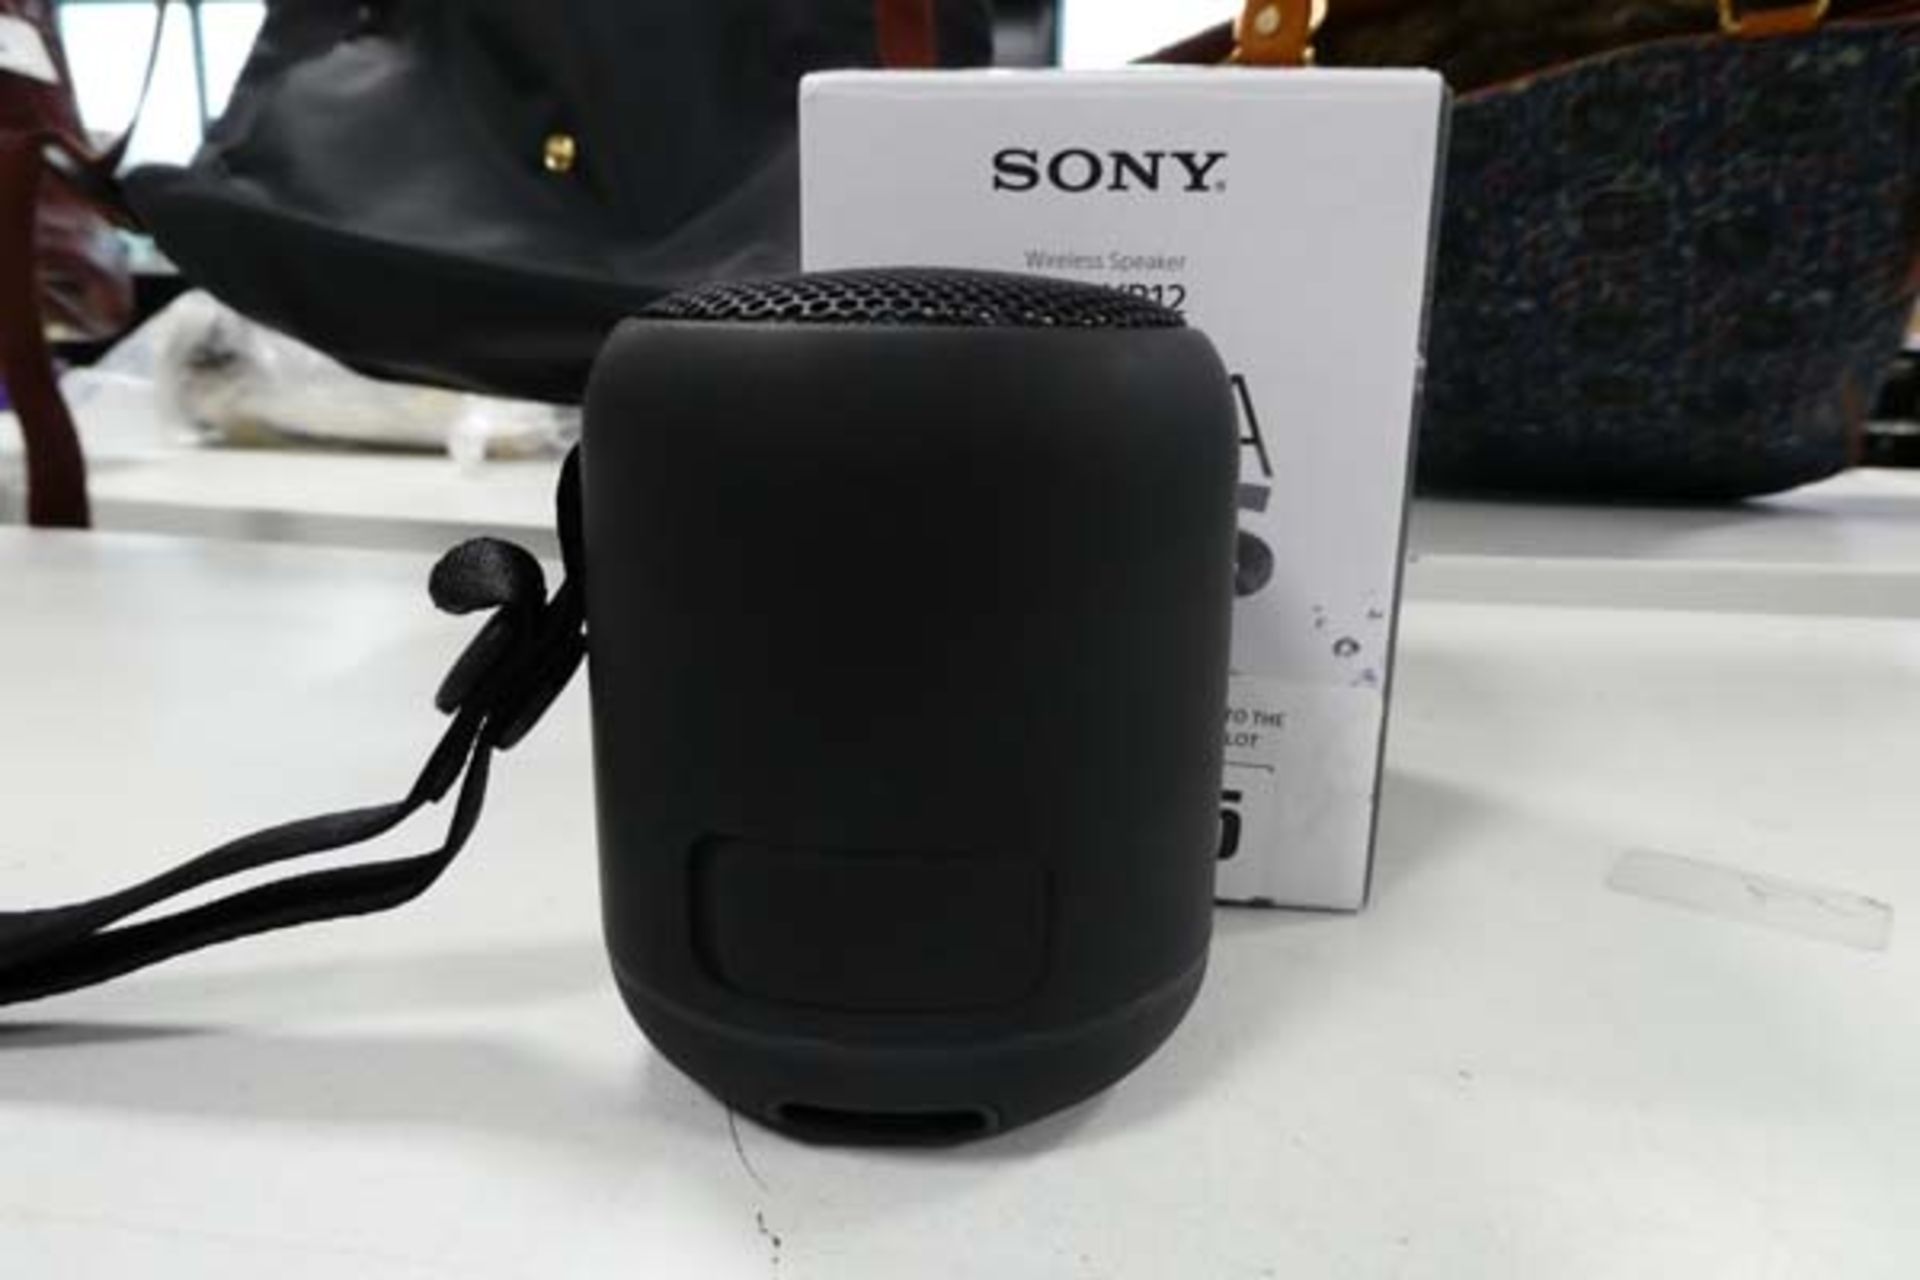 Sony SRS-XB12 wireless speaker (boxed)